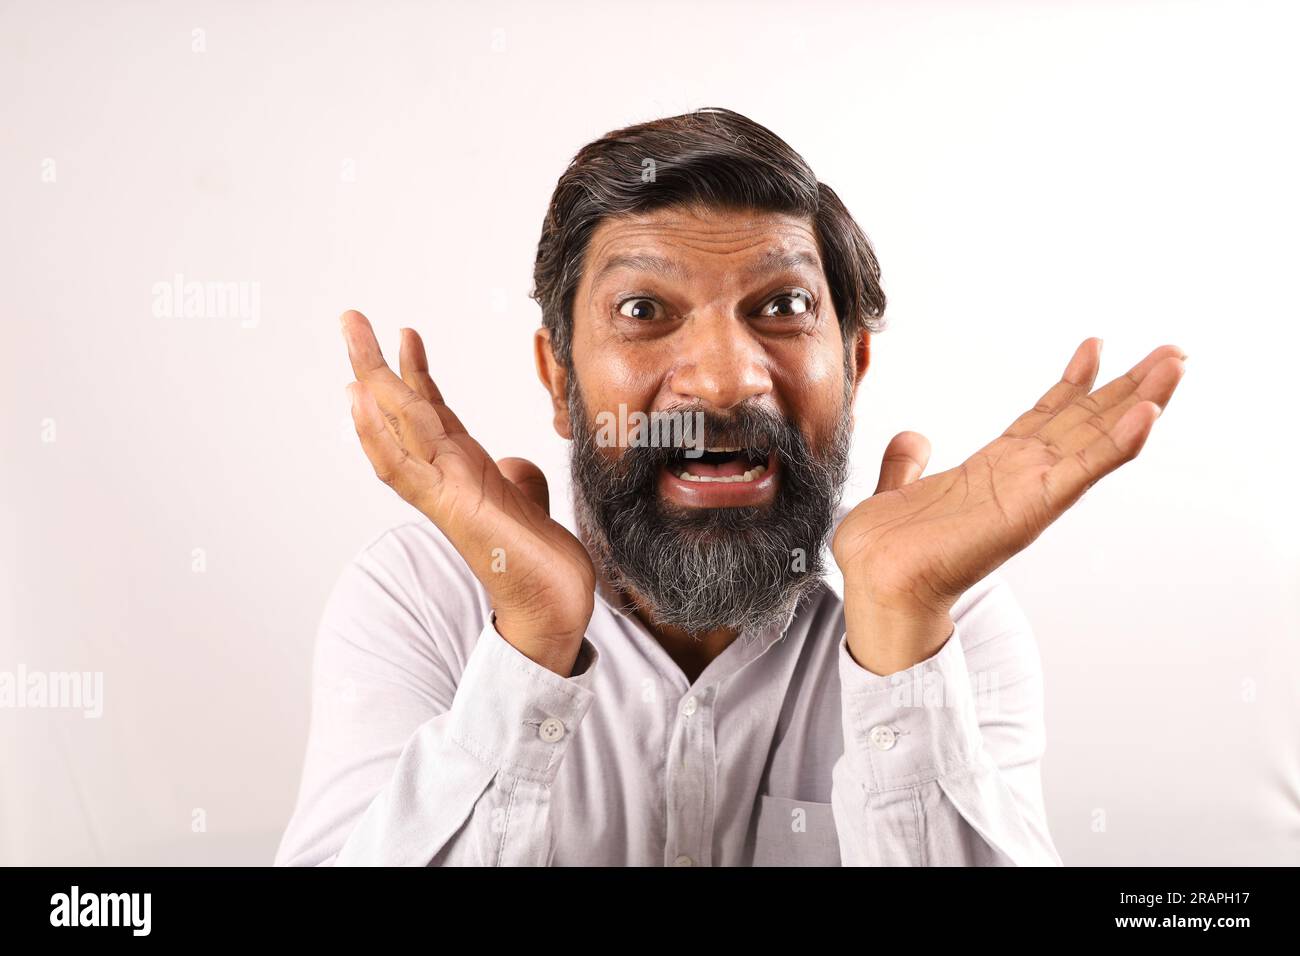 Das Porträt eines indischen bärtigen Mannes überrascht. Flippige Ausdrücke, die das Gefühl von Erfolg und Erfolg darstellen. Stolz darauf sein, Dinge auszuführen. Stockfoto